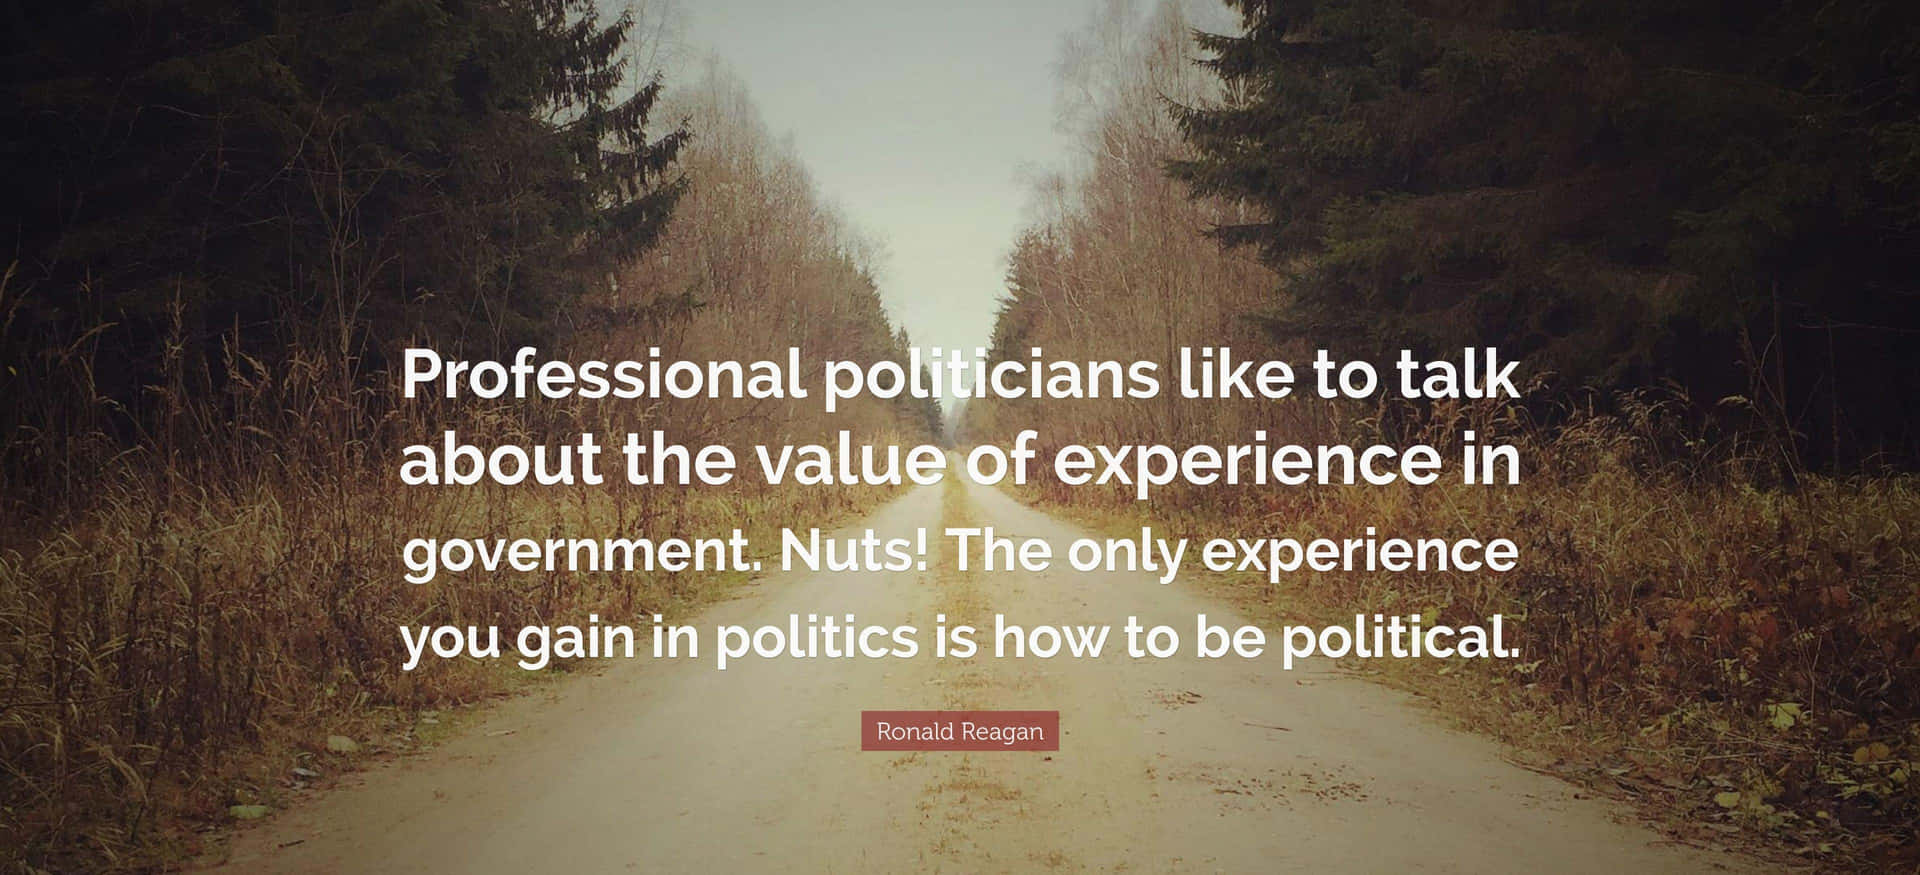 Undertidenkan Erfaringen Bringe En Uvurderlig Værdi, Når Man Skal Navigere I Politik Og Offentlige Anliggender.